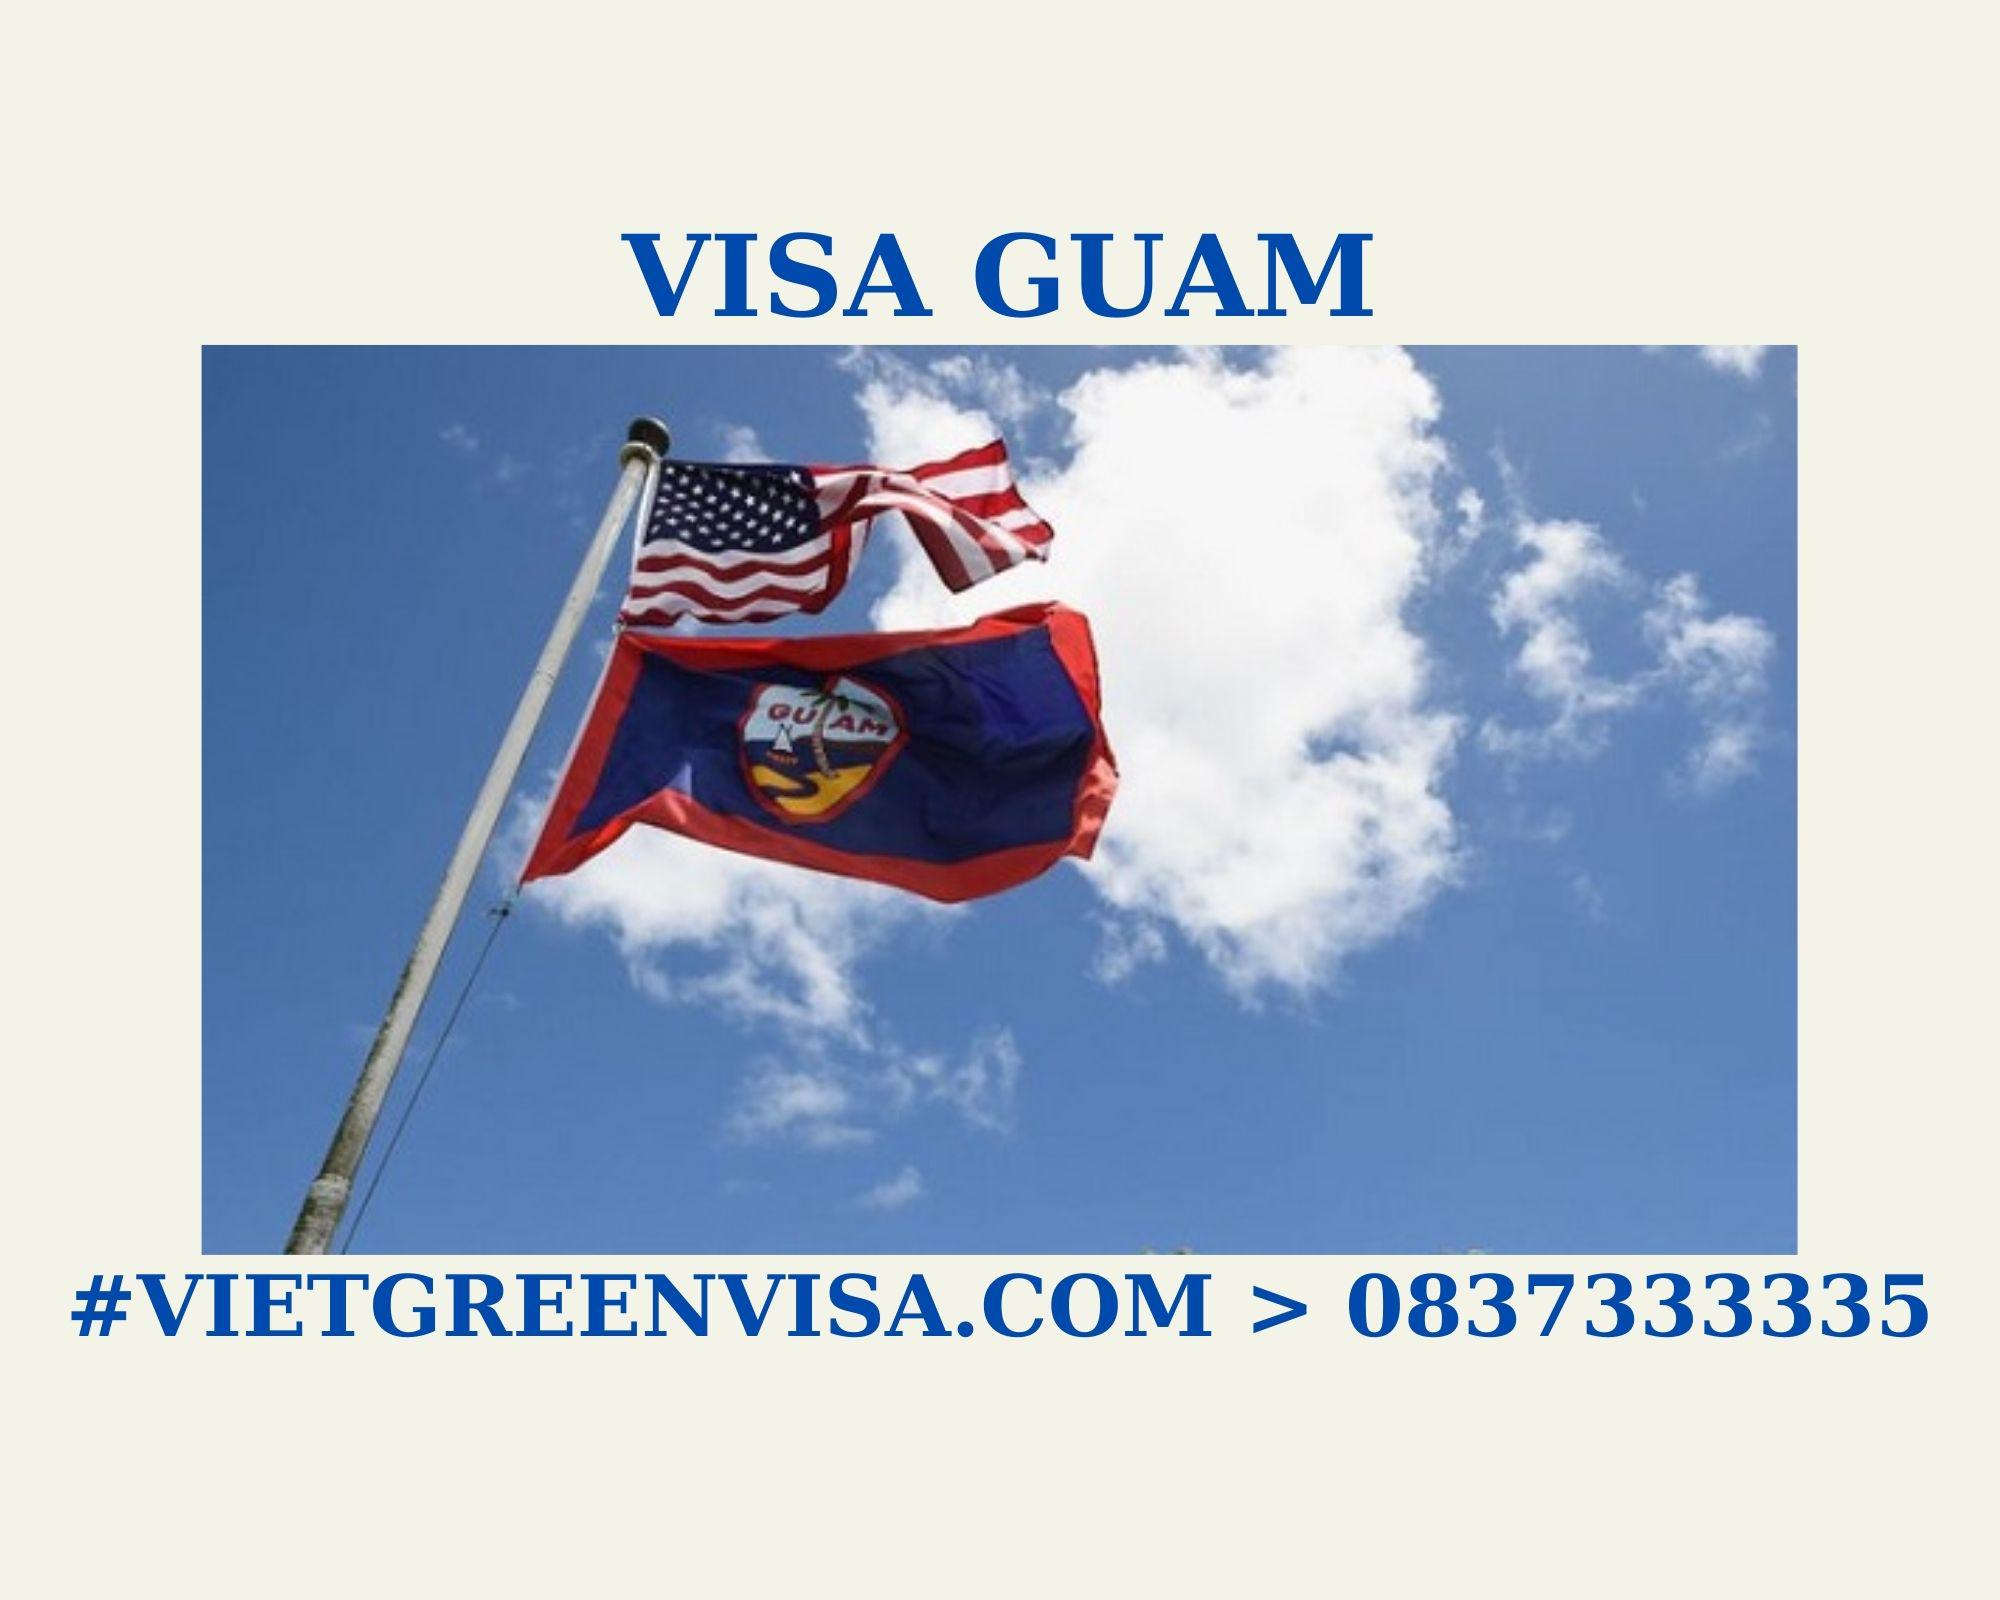 Dịch vụ xin Visa sang Guam tổ chức đám cưới, kết hôn